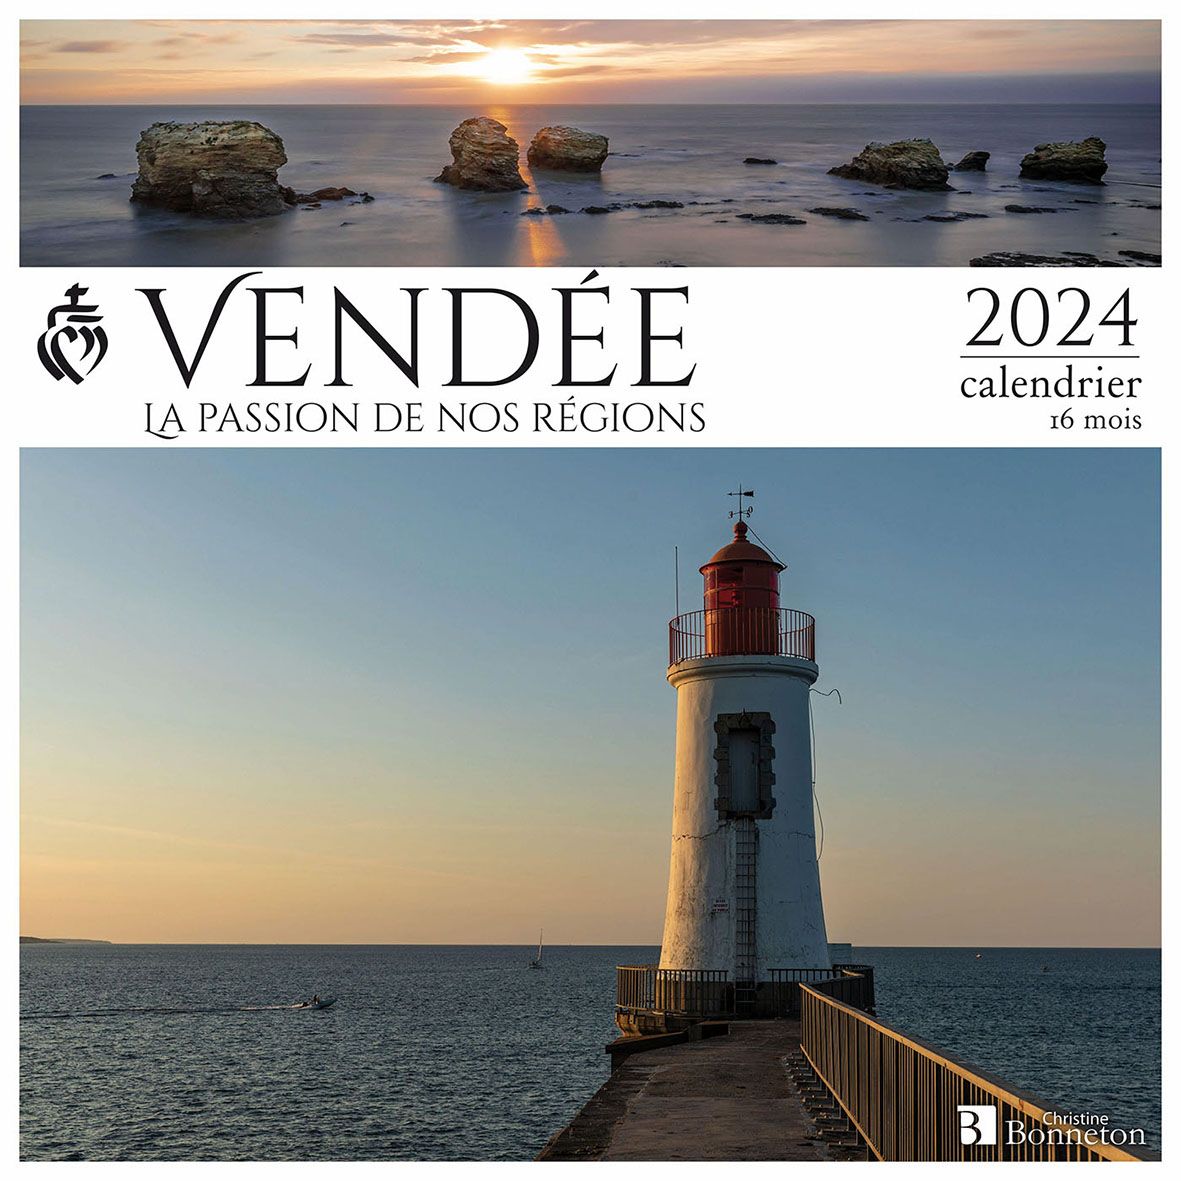 Calendrier 2024 Vendée plage